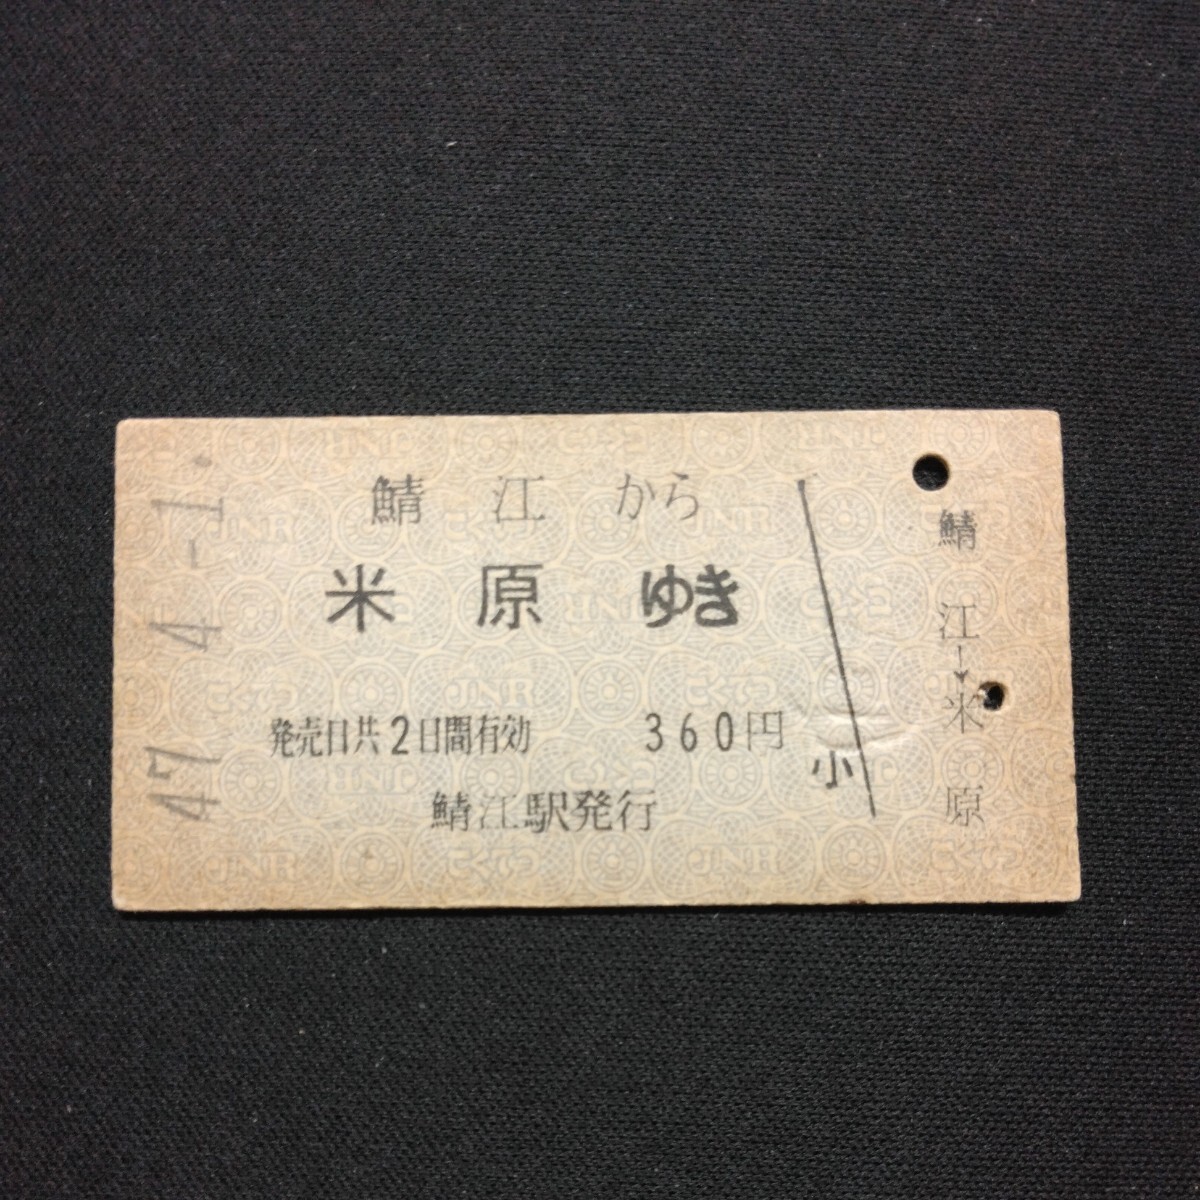 【2897】鯖江から 米原ゆき A型 乗車券 国鉄 鉄道 古い切符 硬券_画像1